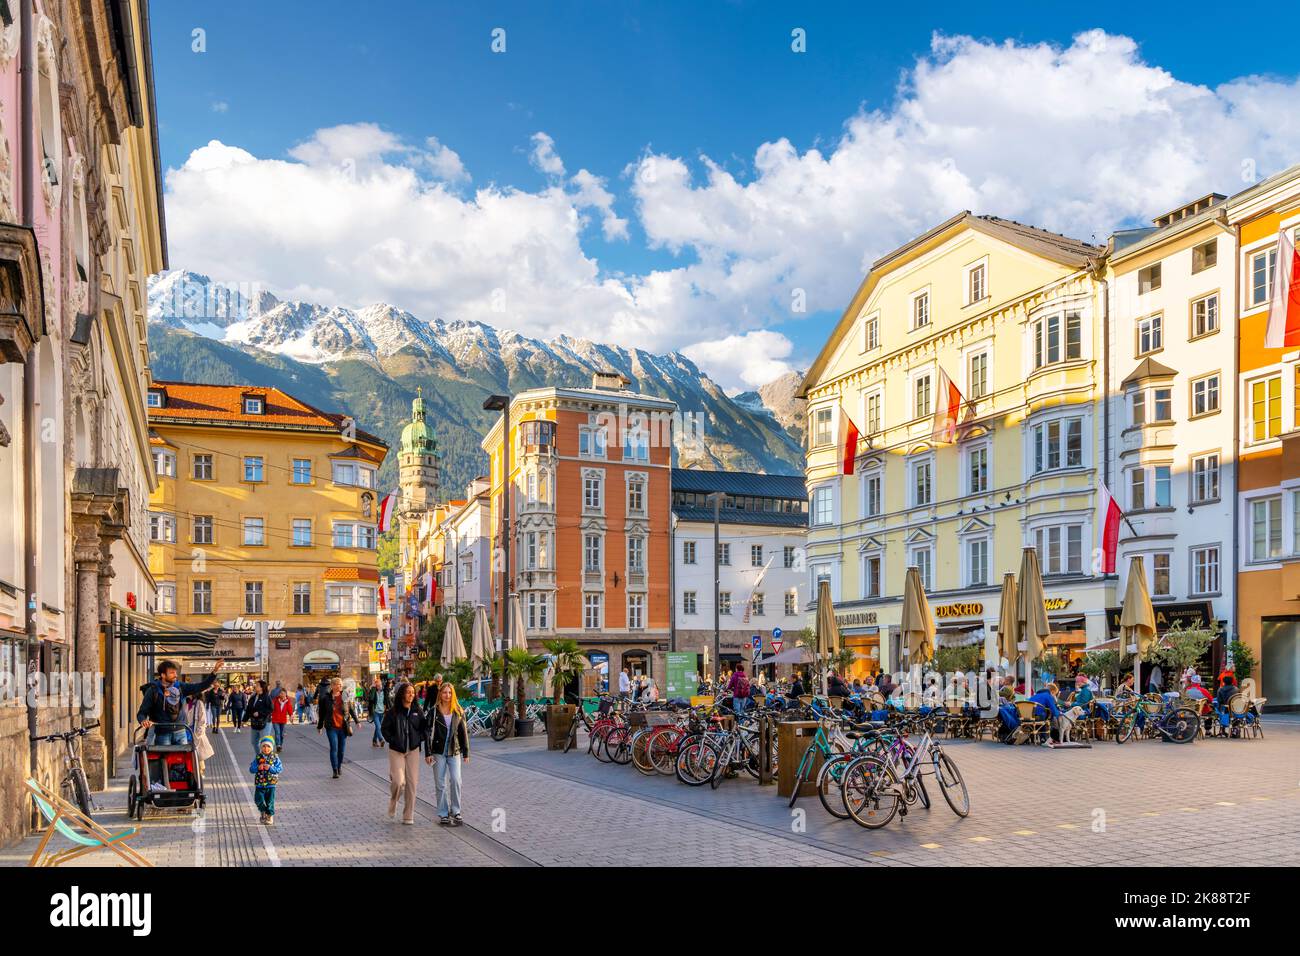 La place principale de la ville d'Innsbruck Autriche en tant que touristes apprécient les boutiques et les cafés avec l'église baroque de l'hôpital et les Alpes autrichiennes couvertes de neige Banque D'Images